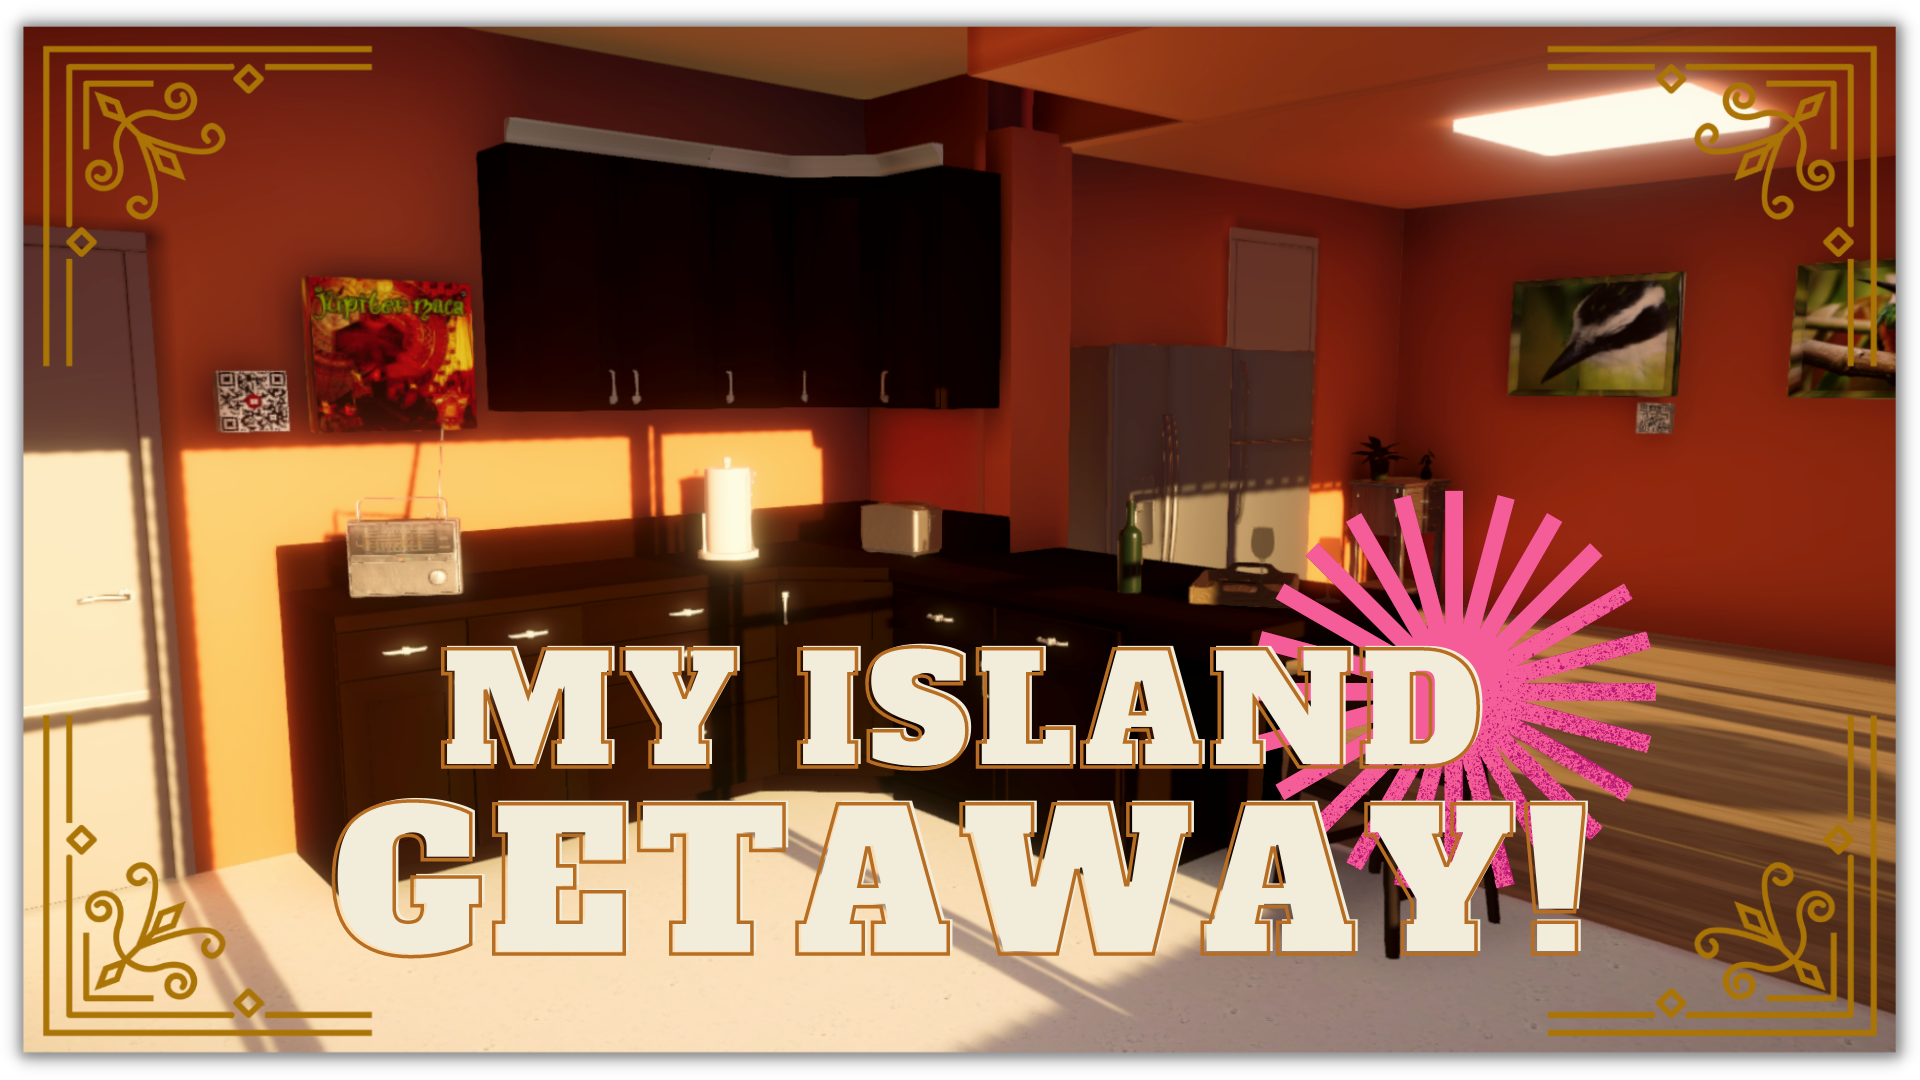 My Island Getaway!